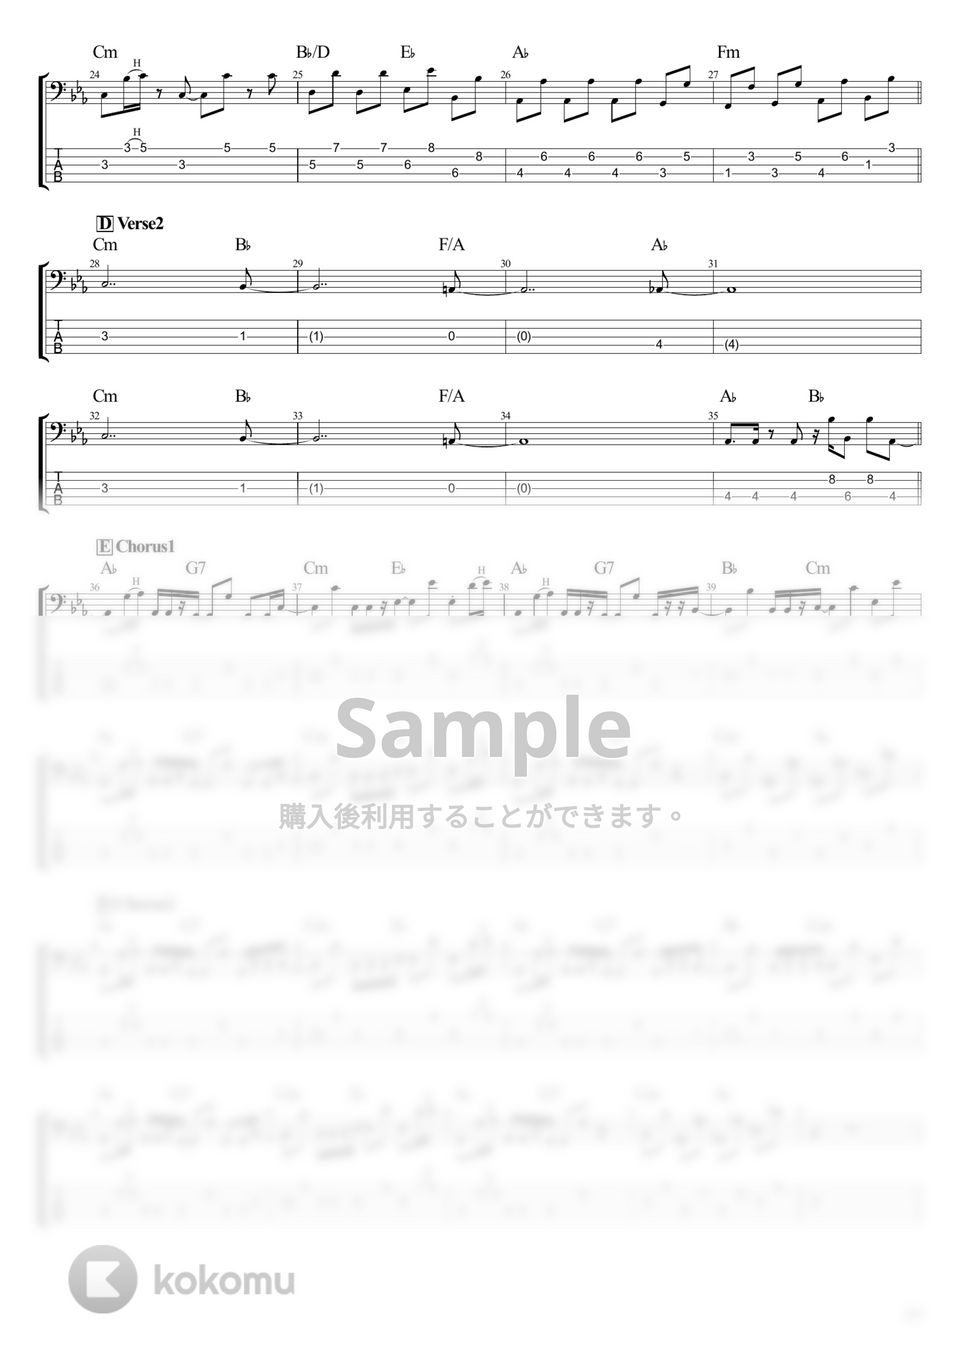 ウマ娘 - Gaze on Me! (Full size) (ベース Tab譜 5弦) by T's bass score